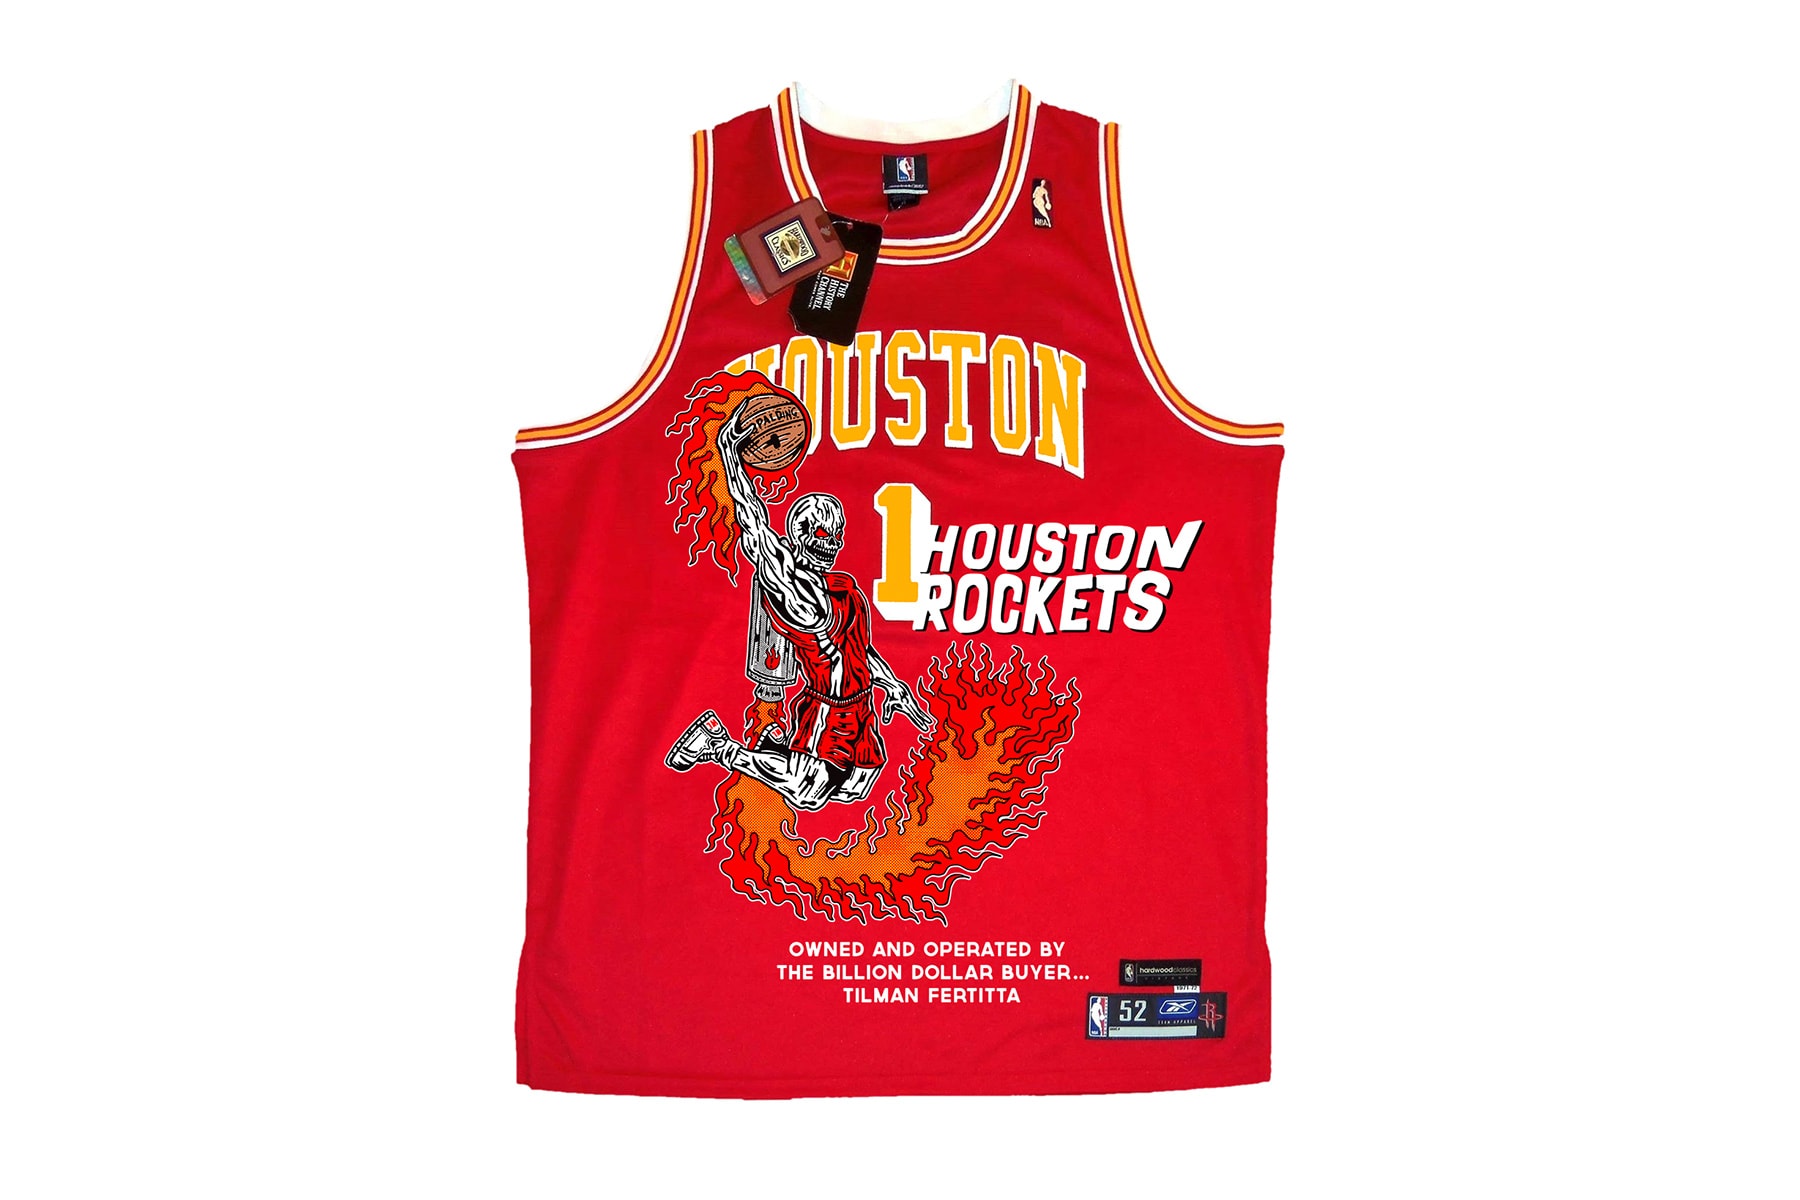 Warren Lotas Houston Rockets Jersey Release Date purchase price info nba basketball